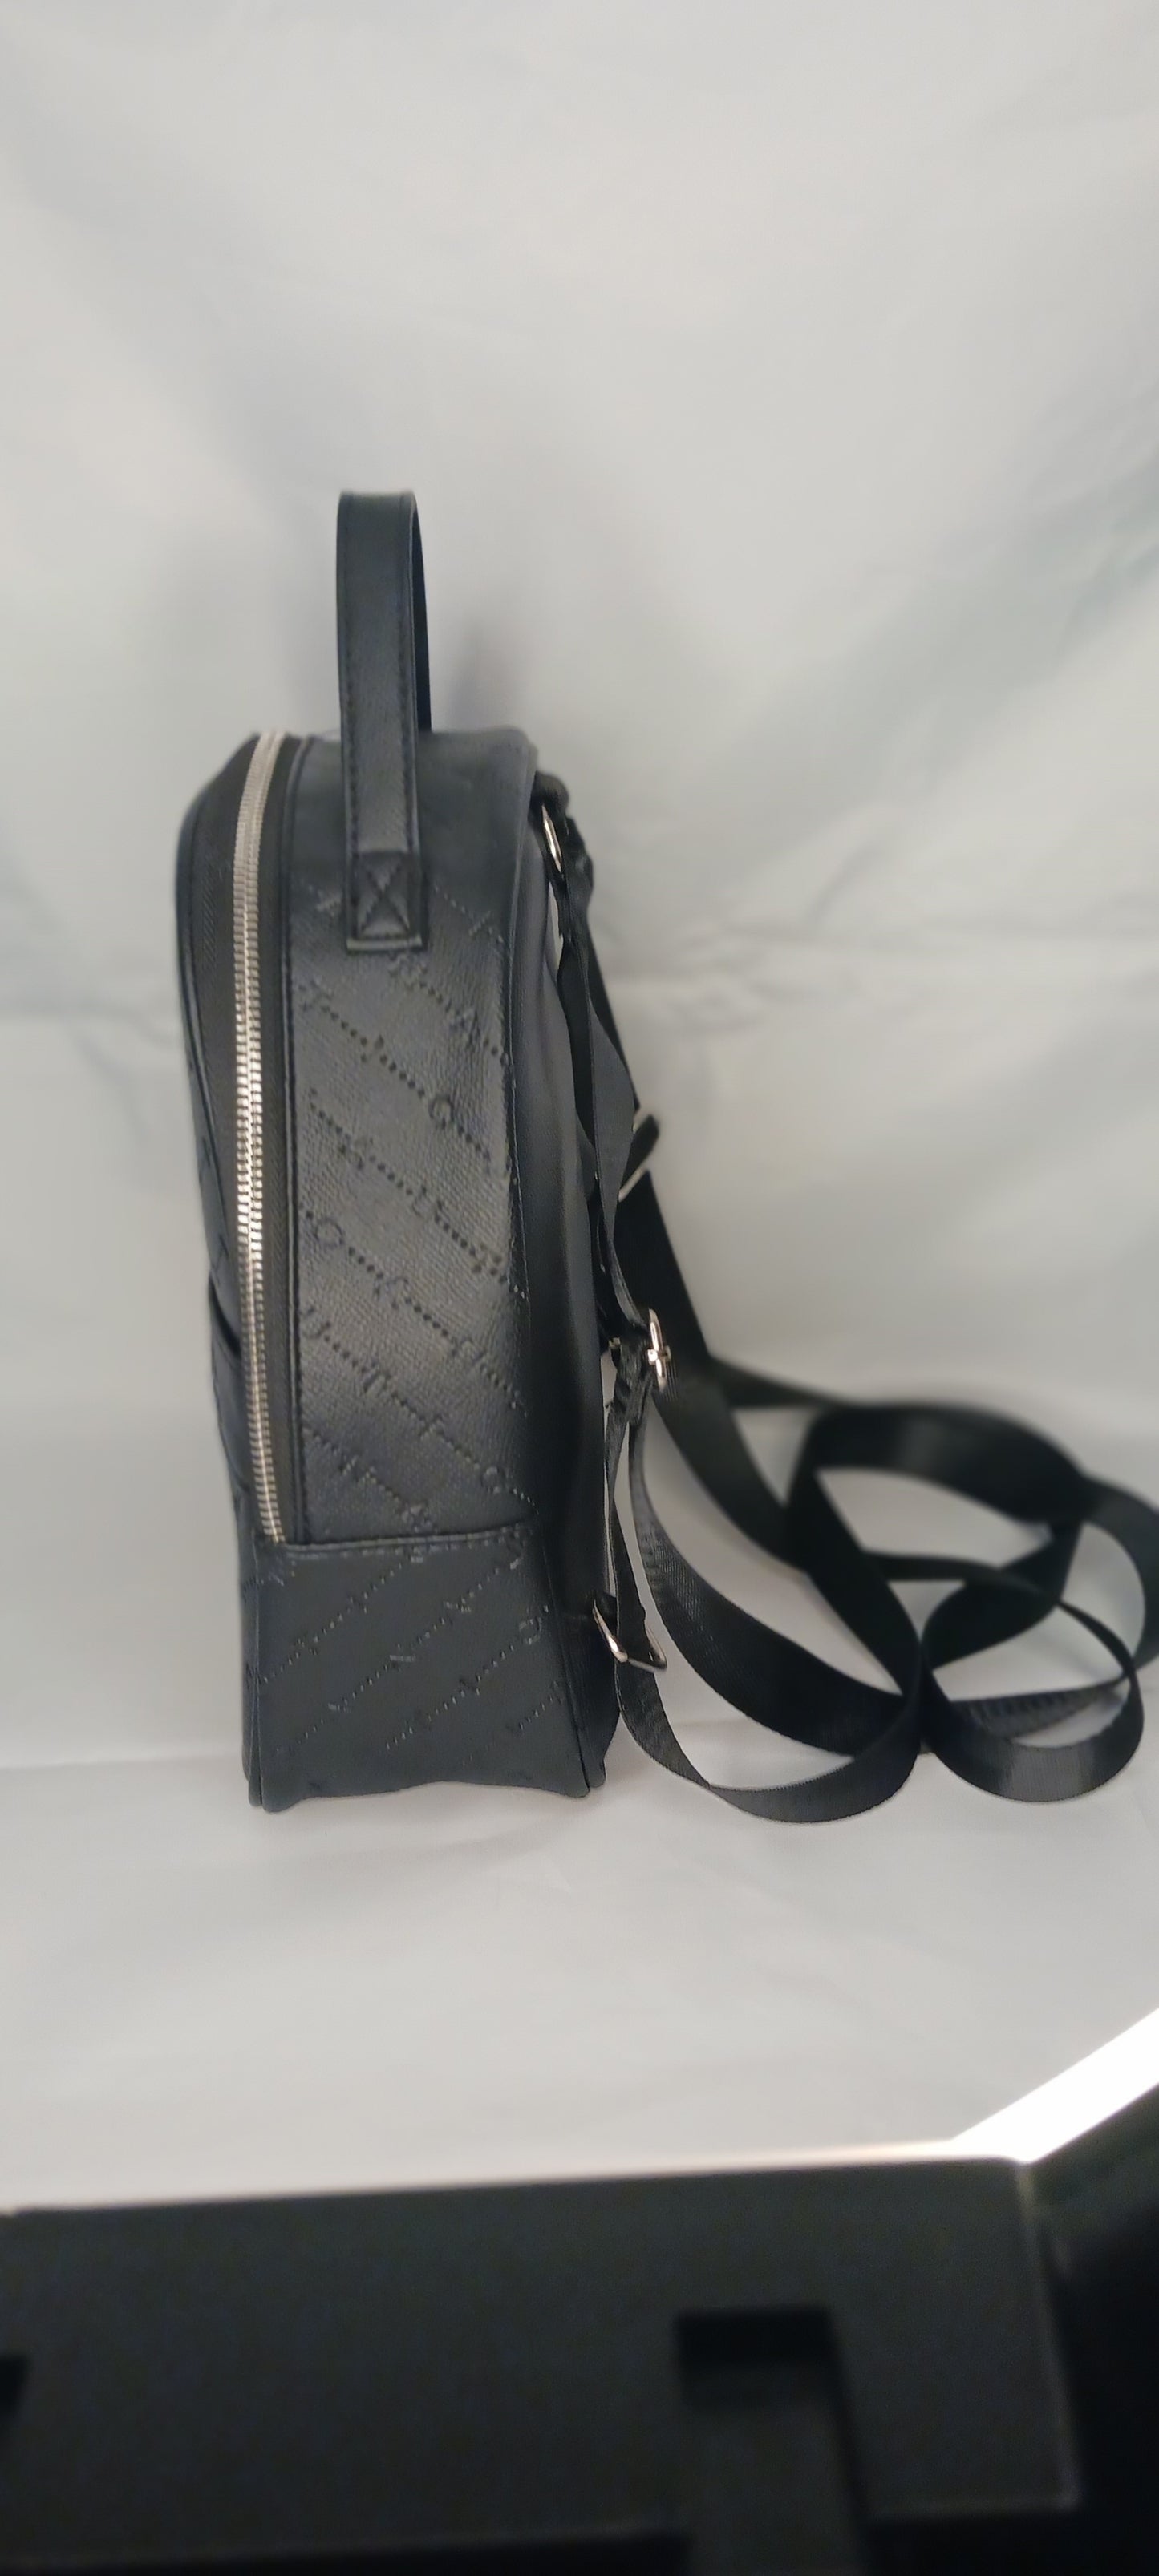 New Nautica black backpack